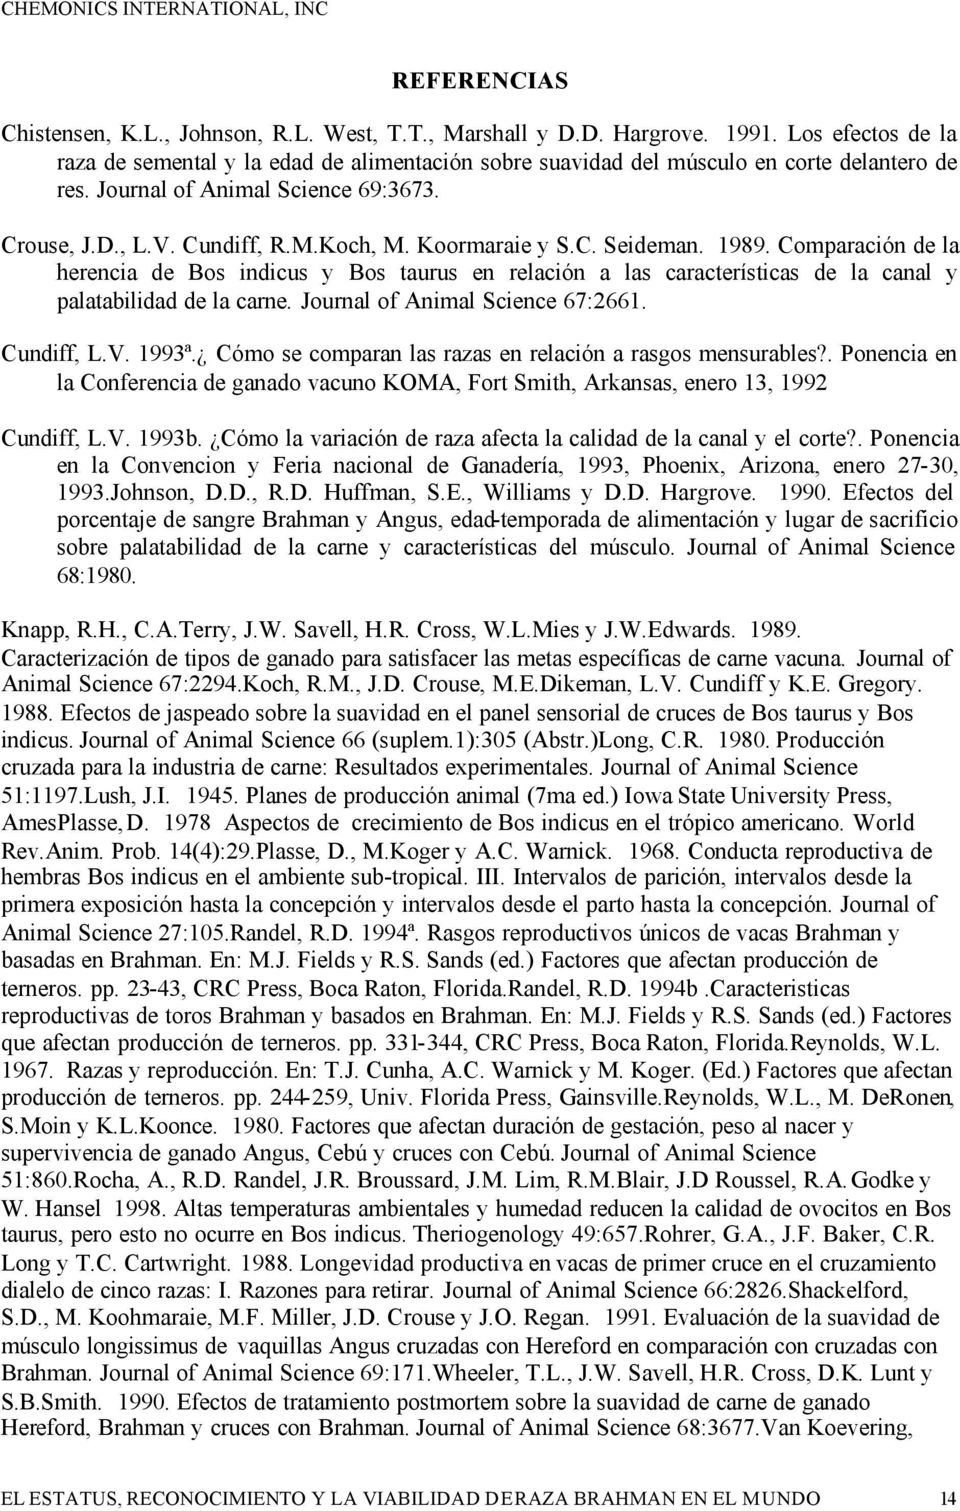 Koormaraie y S.C. Seideman. 1989. Comparación de la herencia de Bos indicus y Bos taurus en relación a las características de la canal y palatabilidad de la carne. Journal of Animal Science 67:2661.